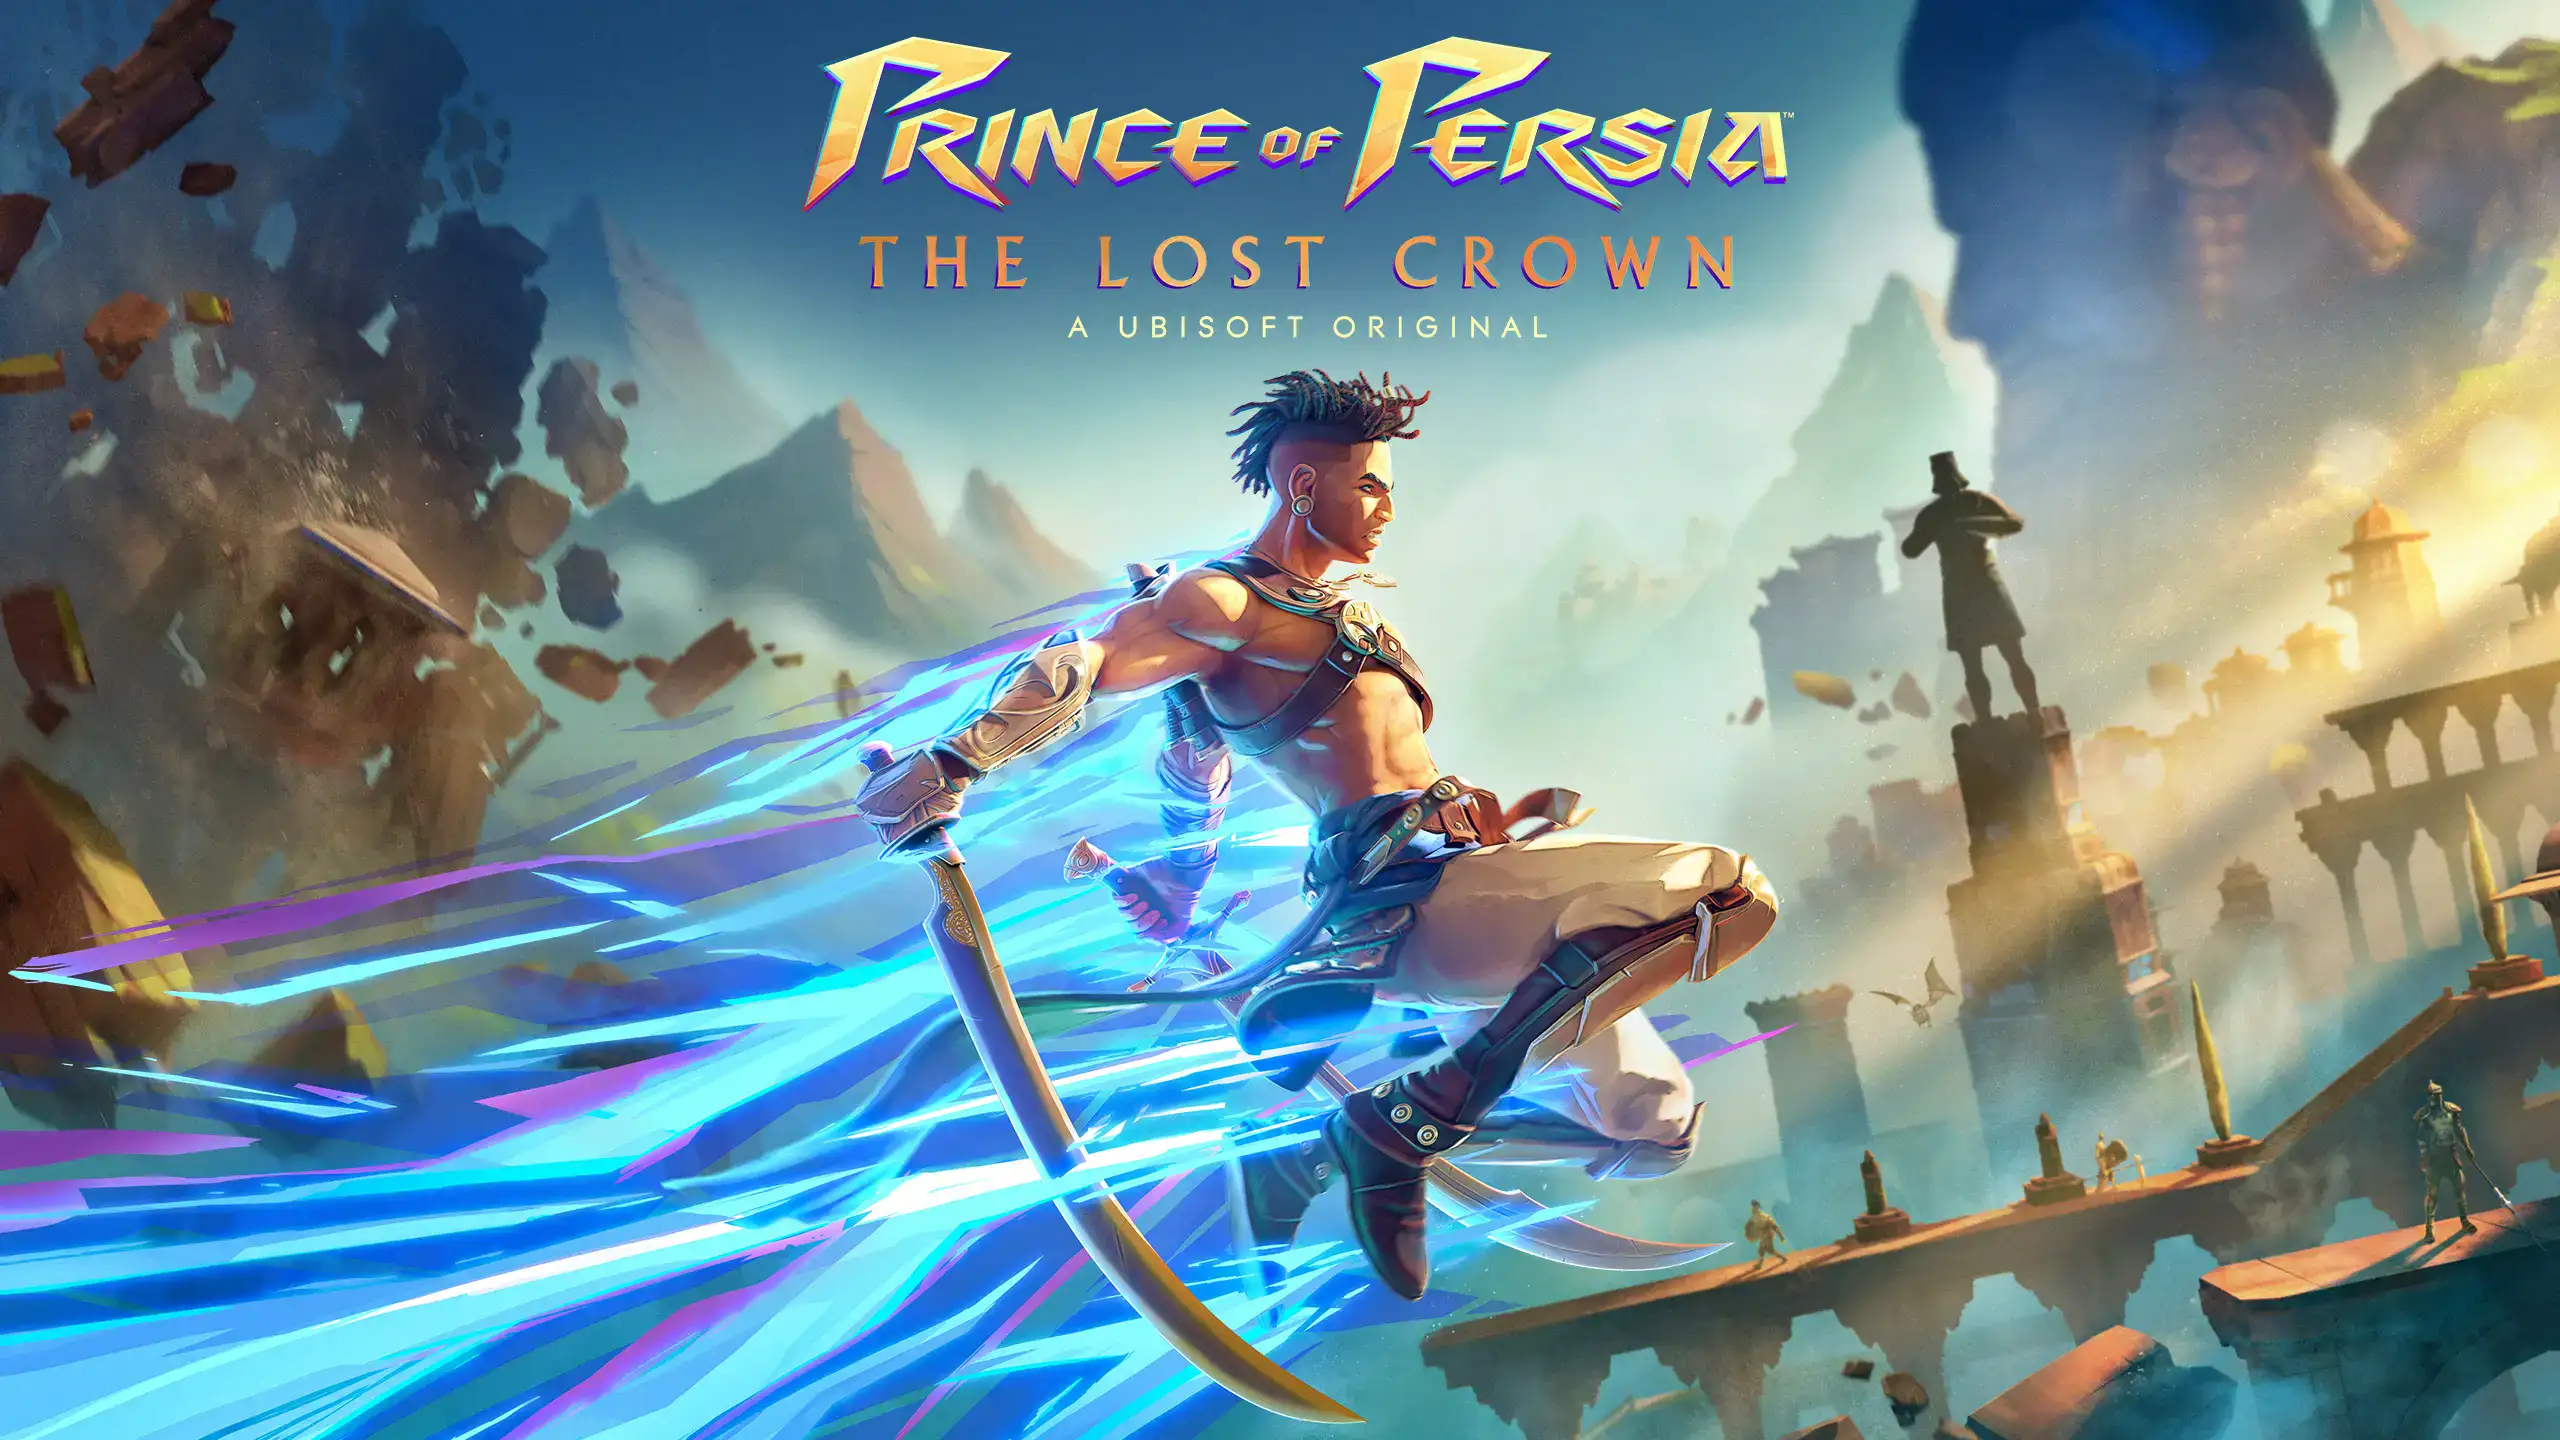 بازی Prince of Persia: The Lost Crown سه آپدیت رایگان و DLC دریافت می کند